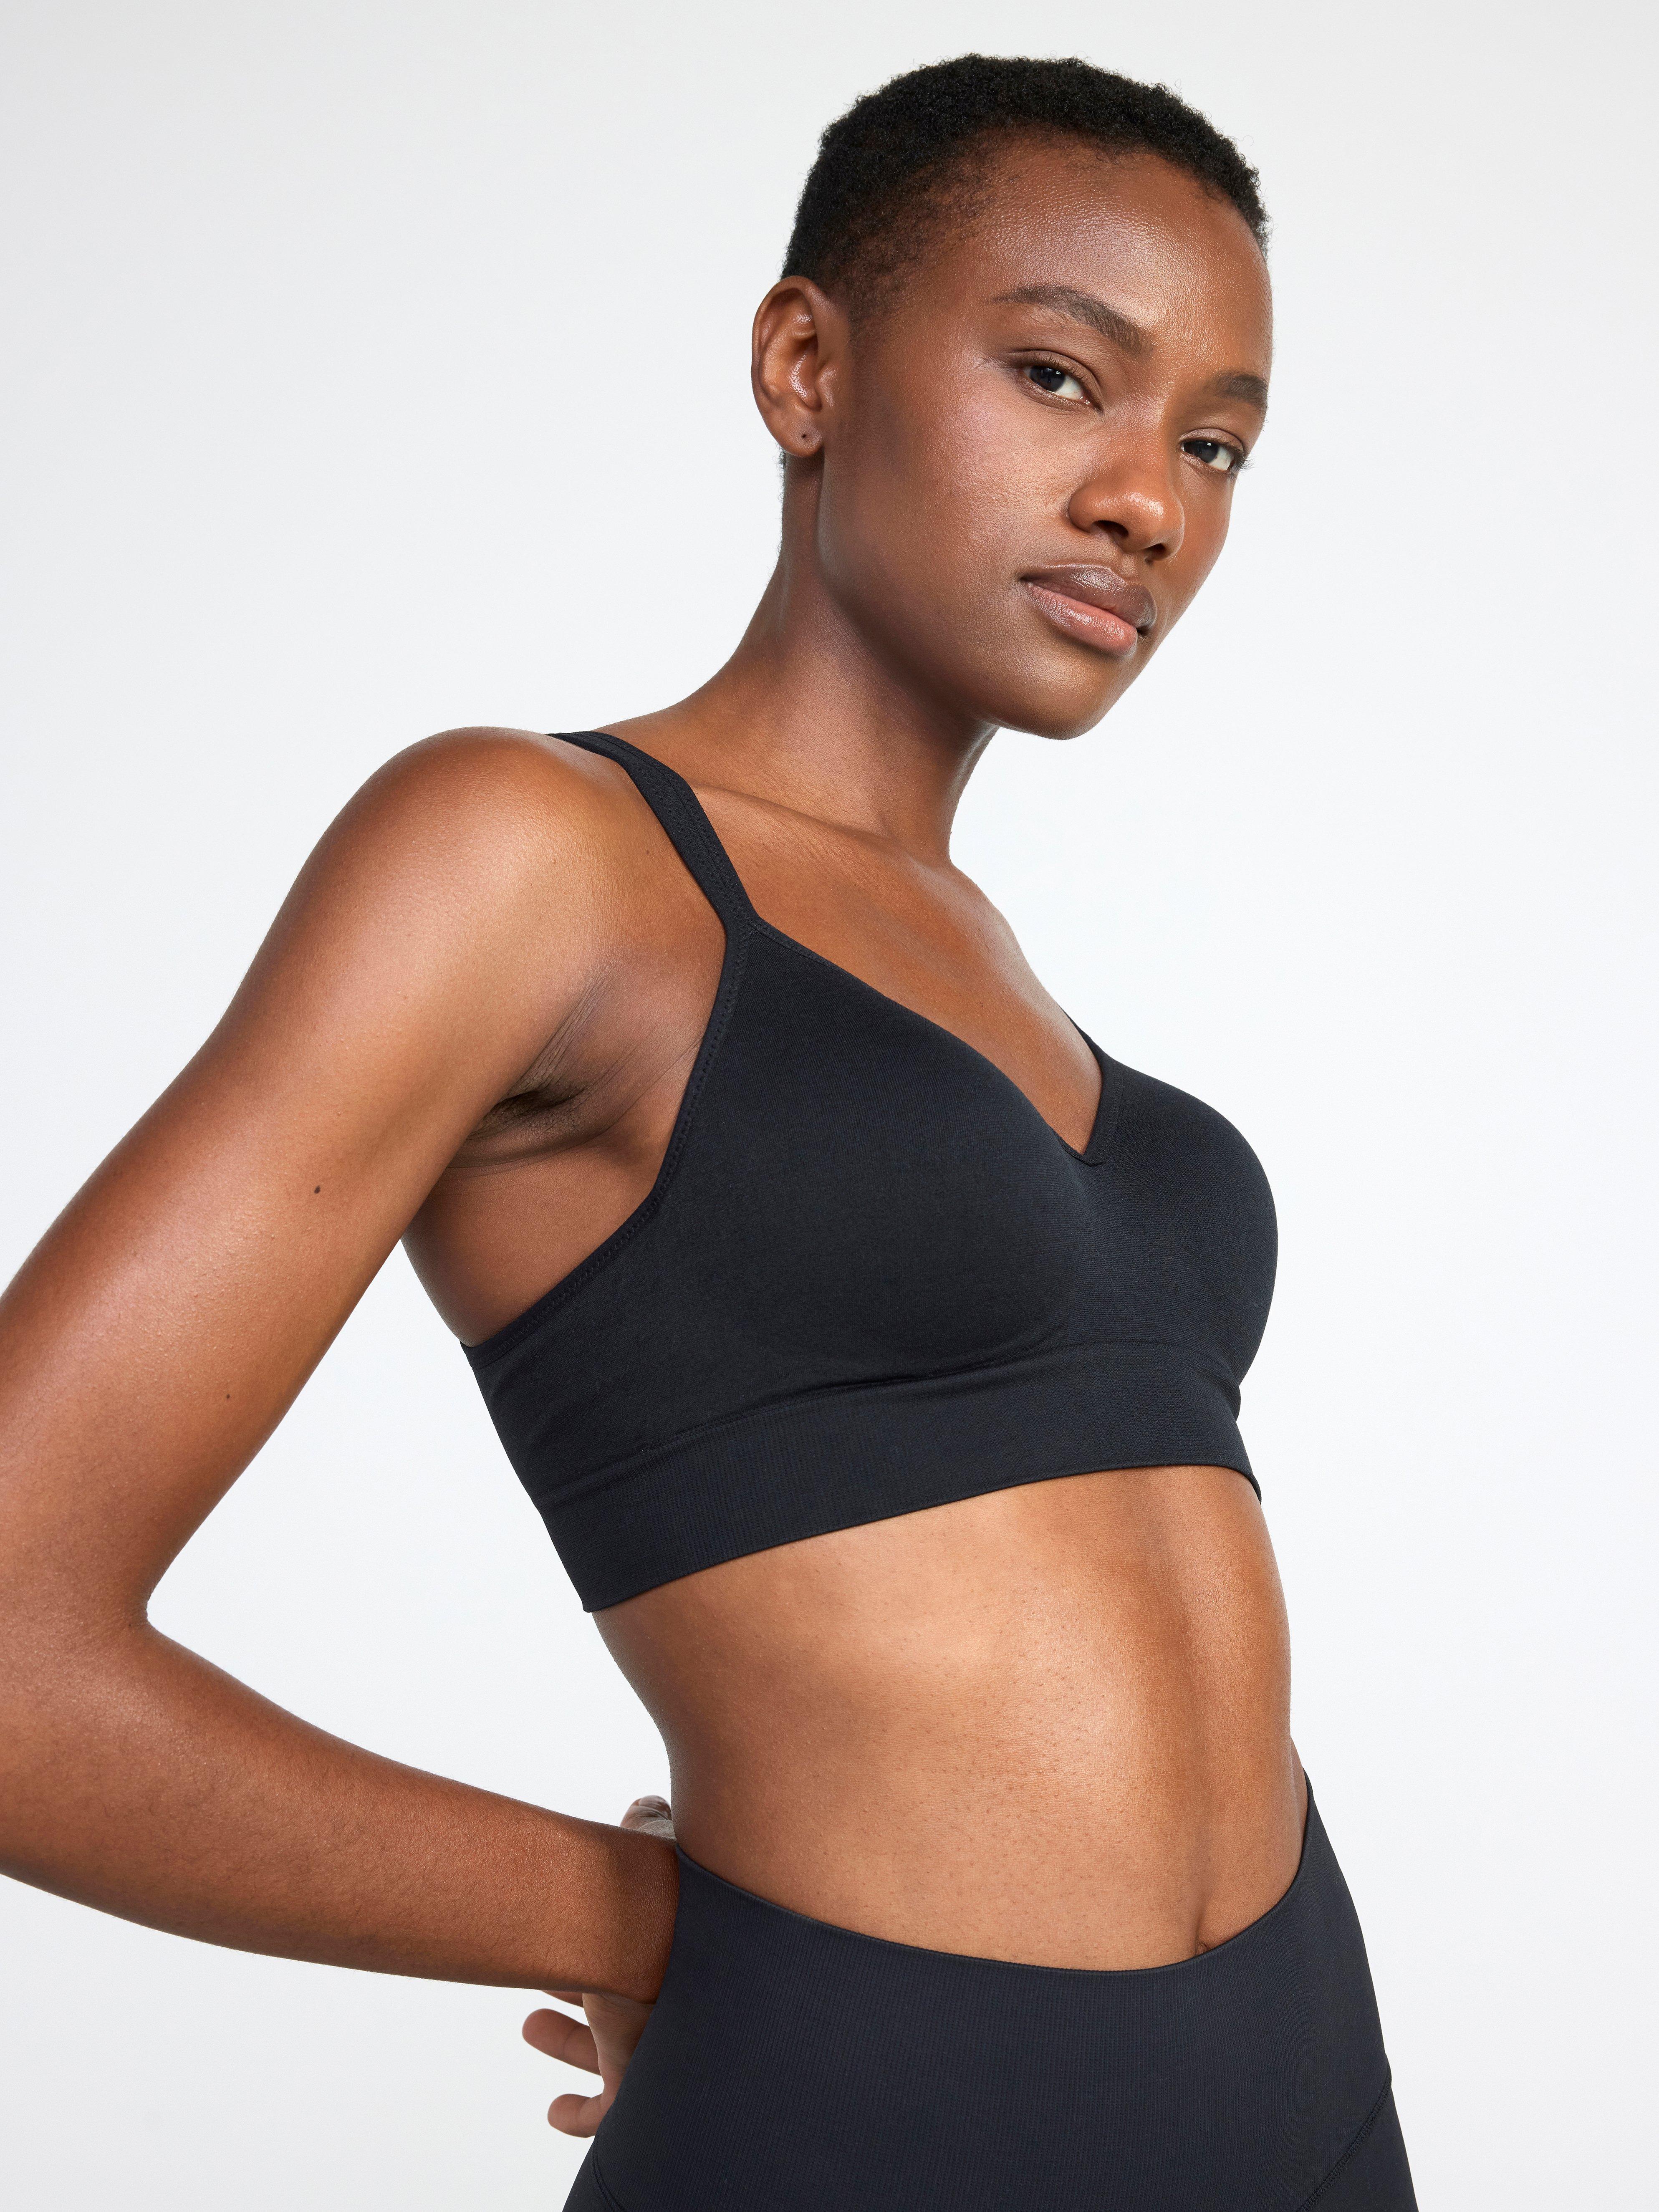 Nike Women's Sports Bras Polyester/Lyocell Blend Indy Soft Bra